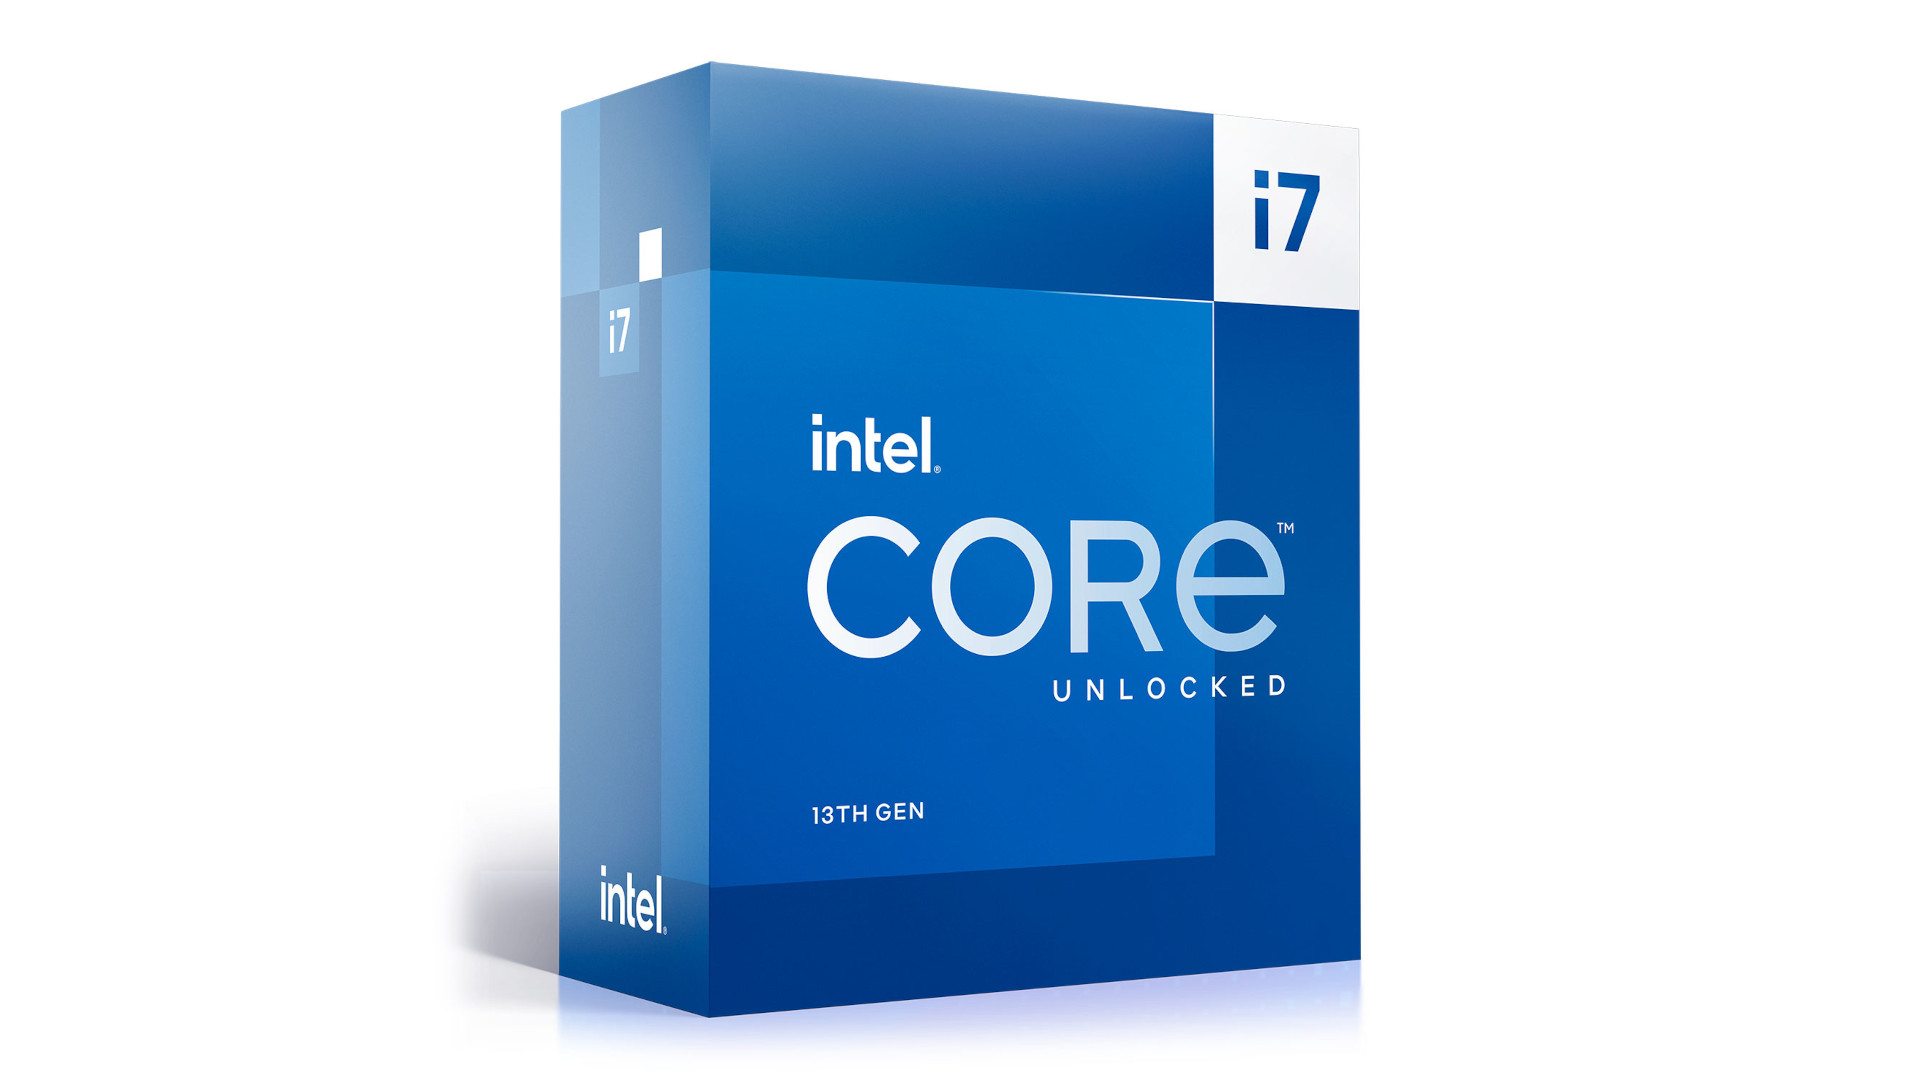 De beste CPU voor streaming is de Intel Core i7 13700K